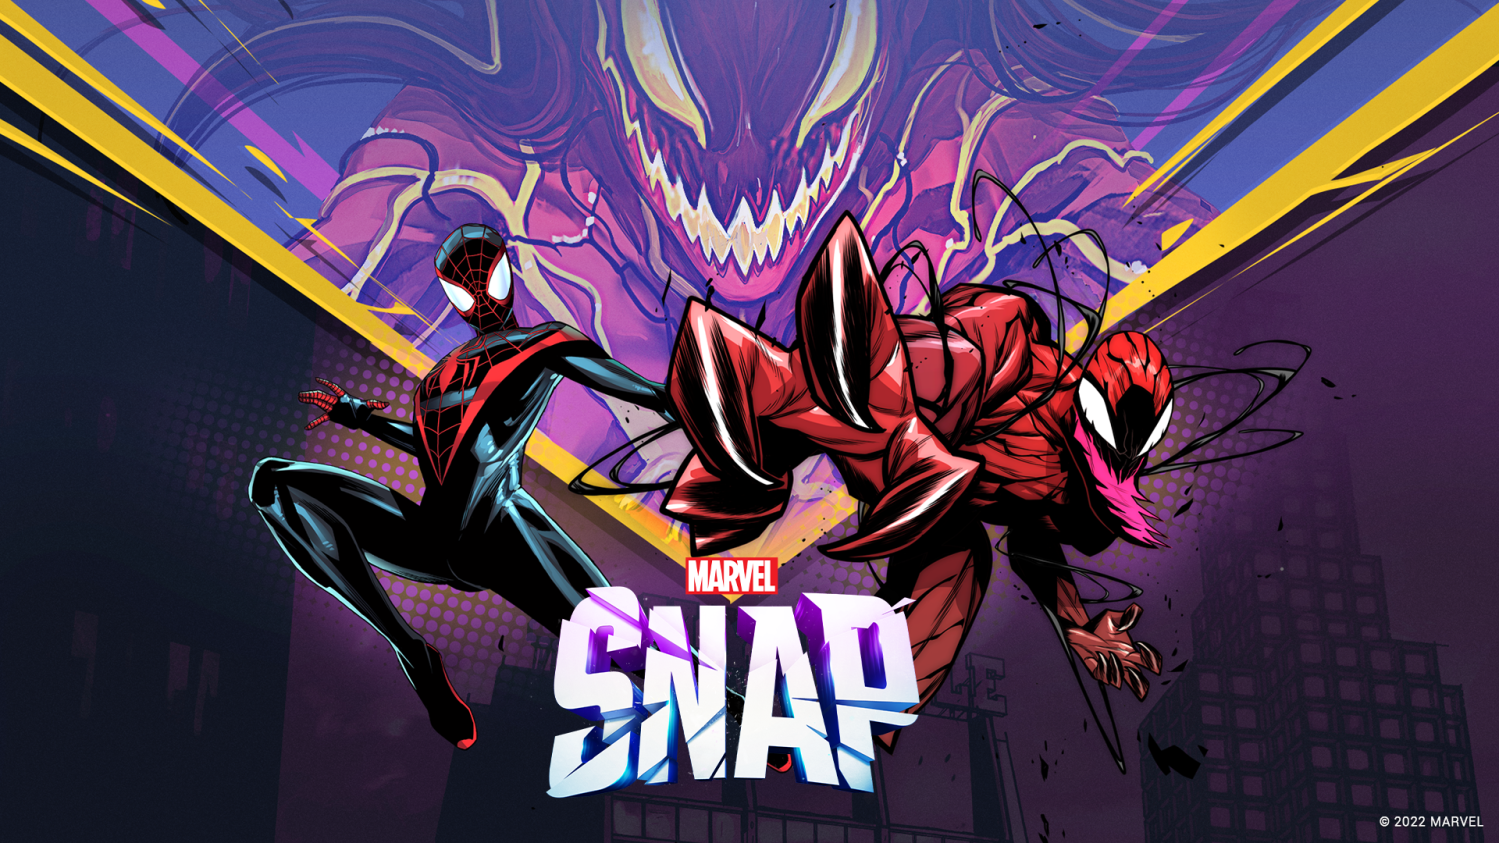 SnapFan, creating a Marvel Snap website